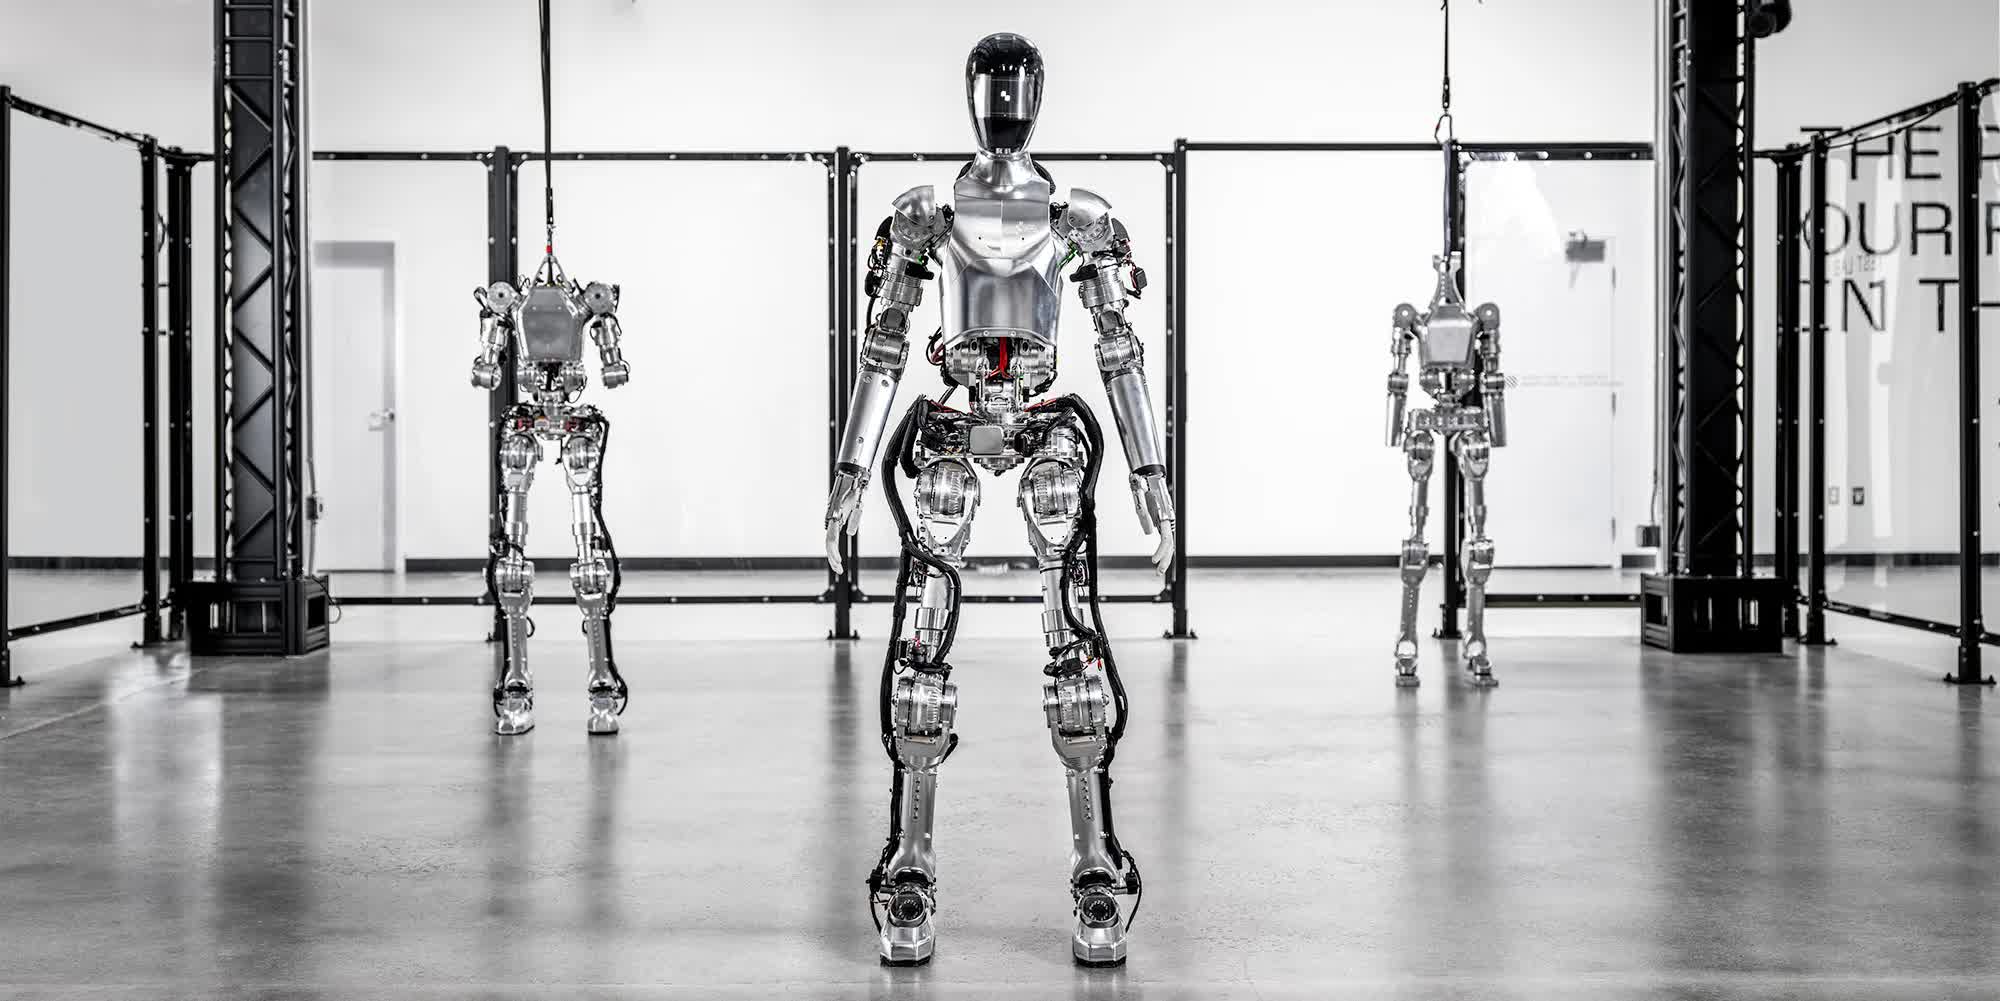 BMW añadirá robots humanoides a sus plantas de fabricación, lo que generará preocupación por posibles pérdidas de empleos